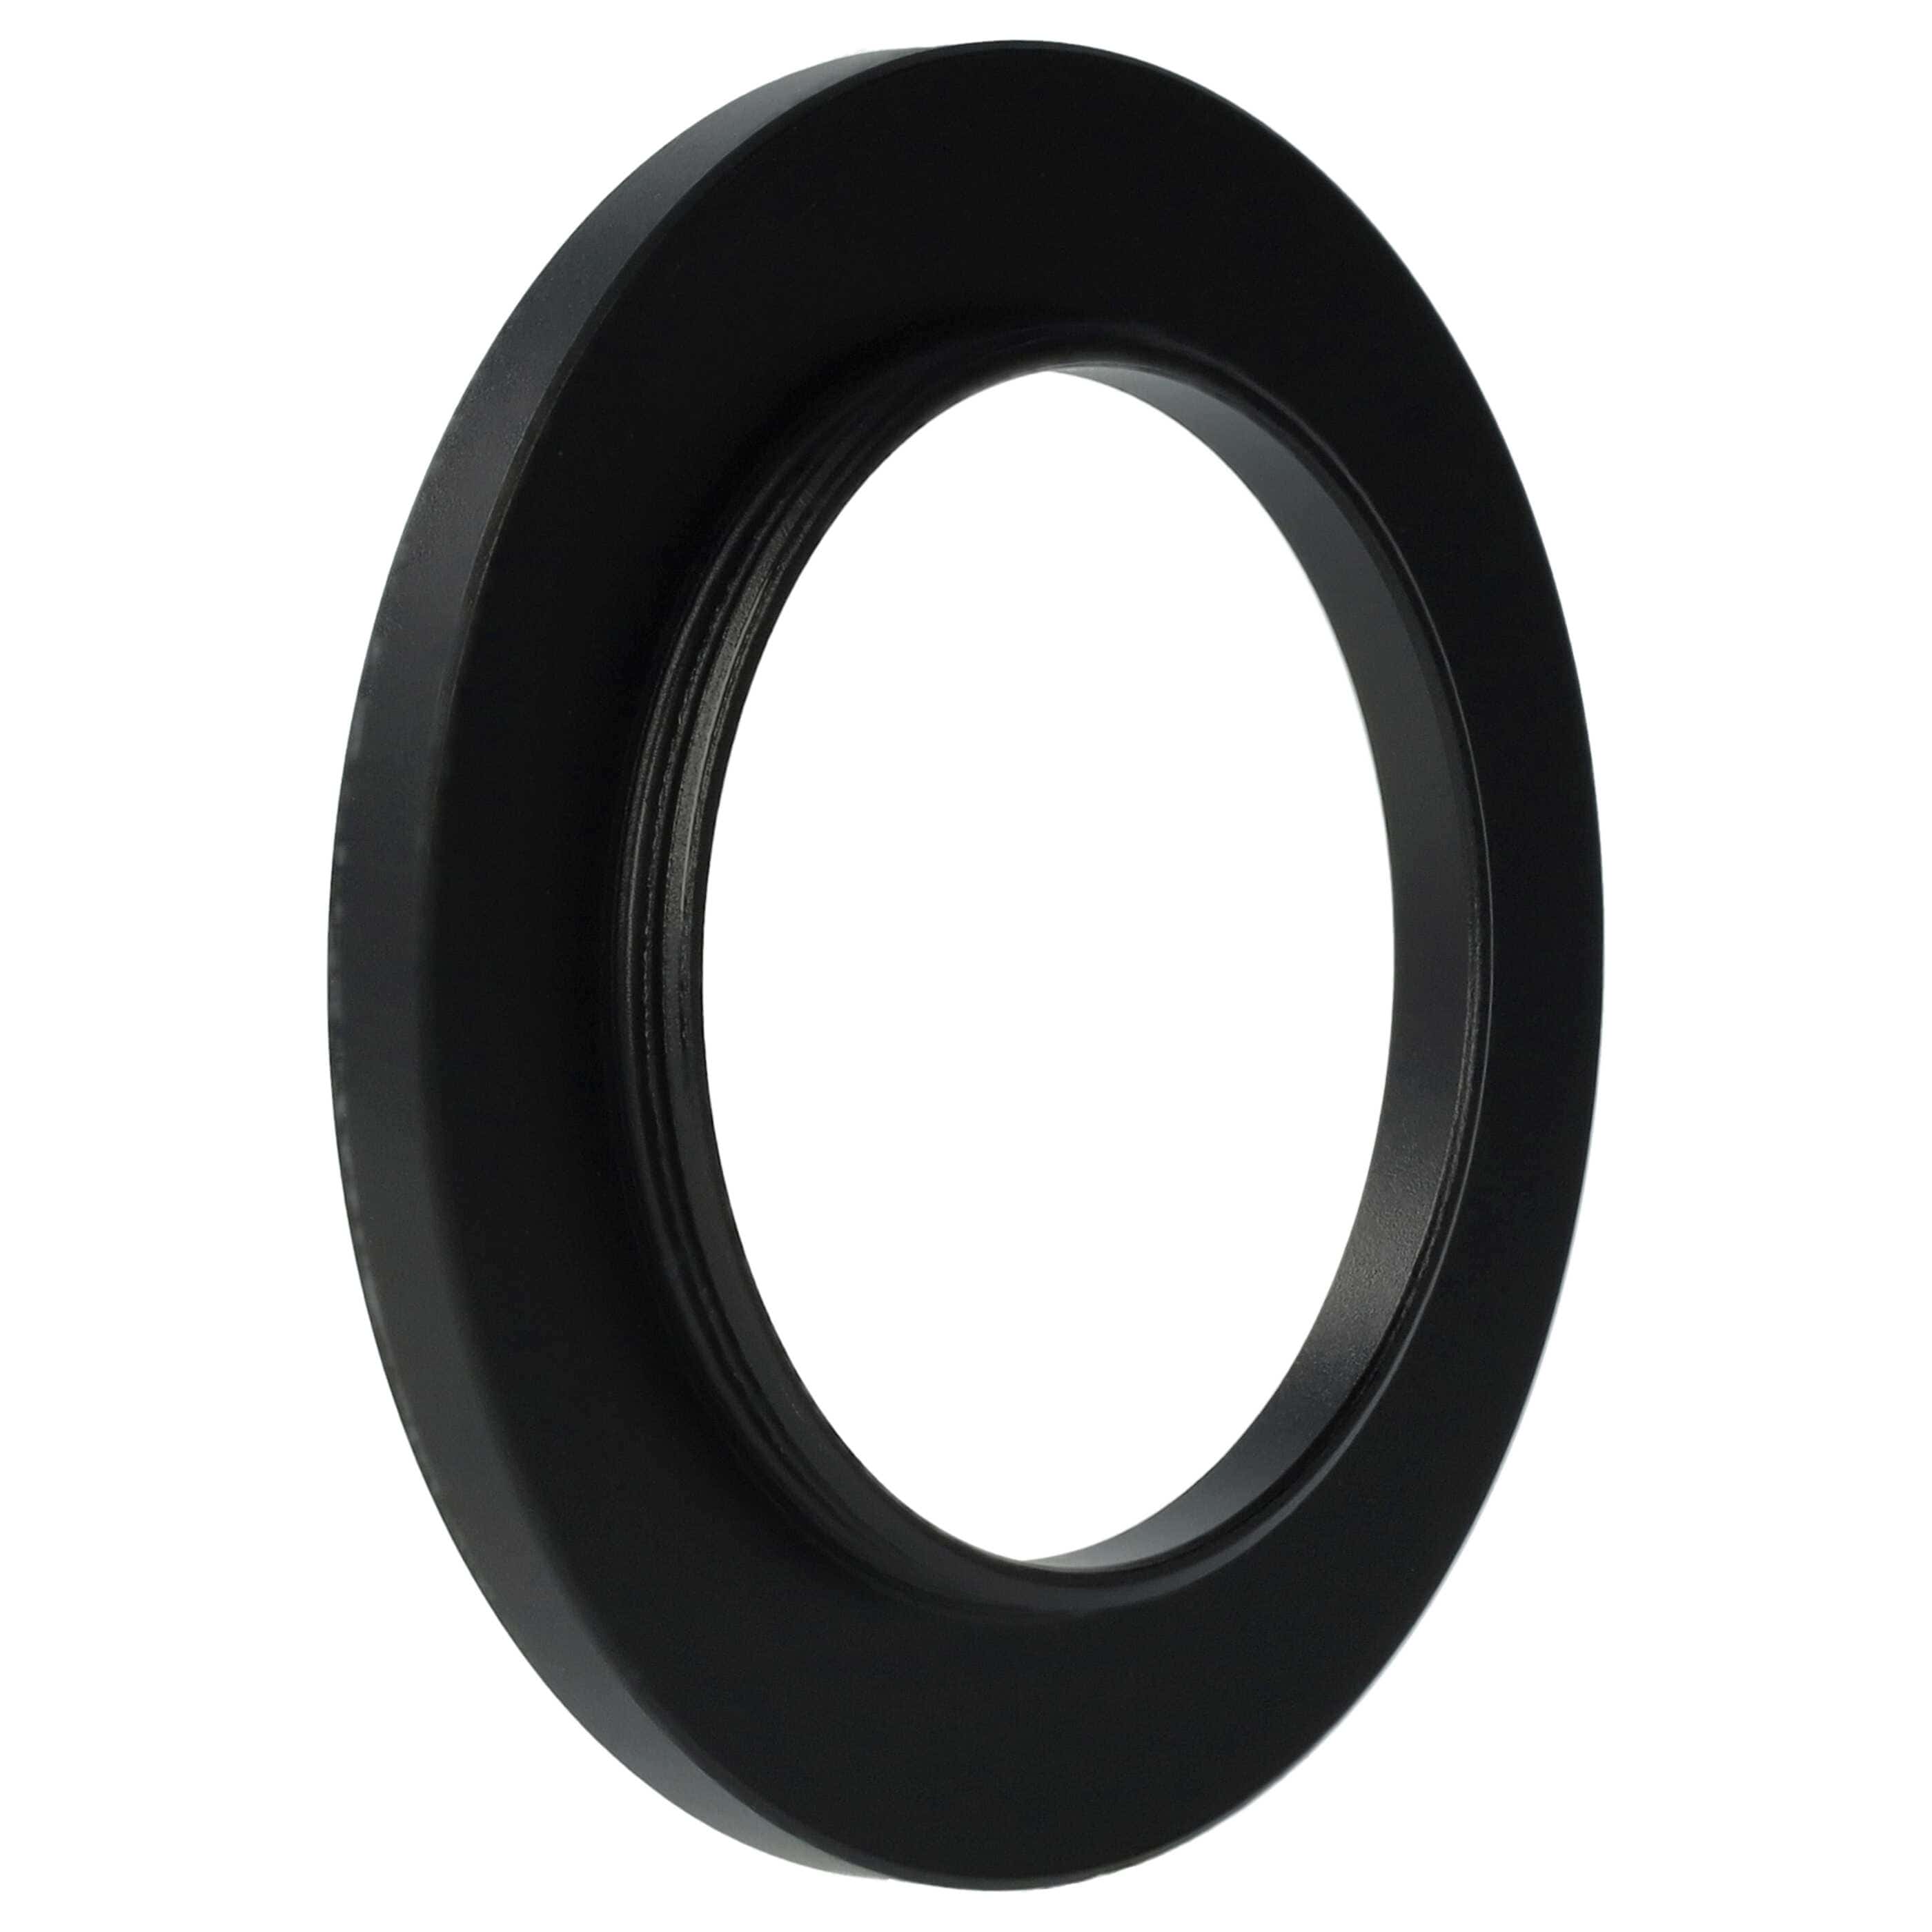 Step-Up-Ring Adapter 38 mm auf 52 mm passend für diverse Kamera-Objektive - Filteradapter